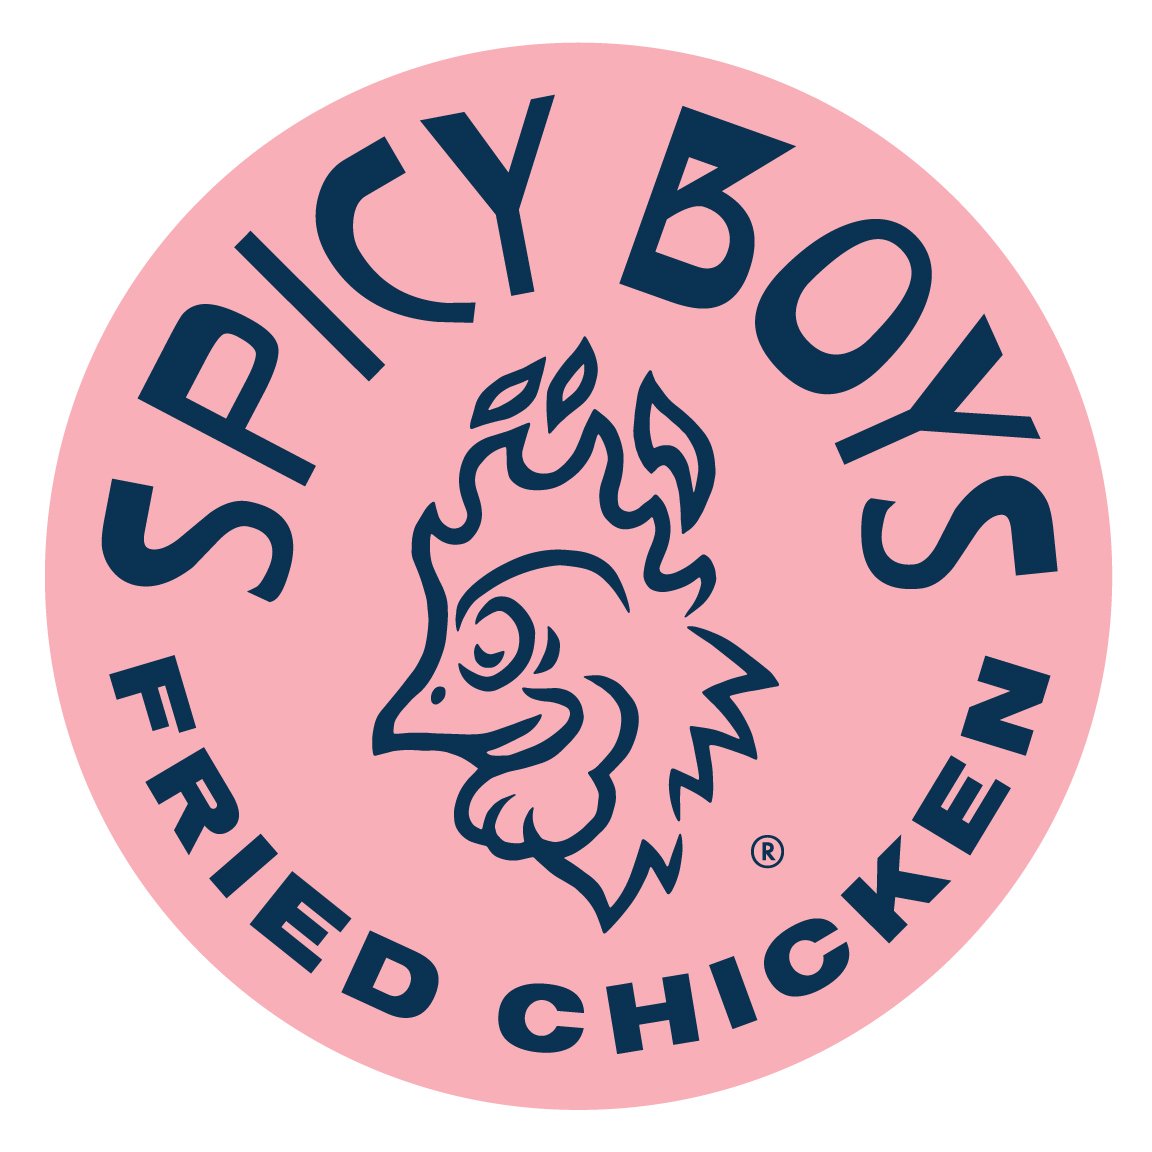 Spicy Boys Fried Chicken - Austin, TX